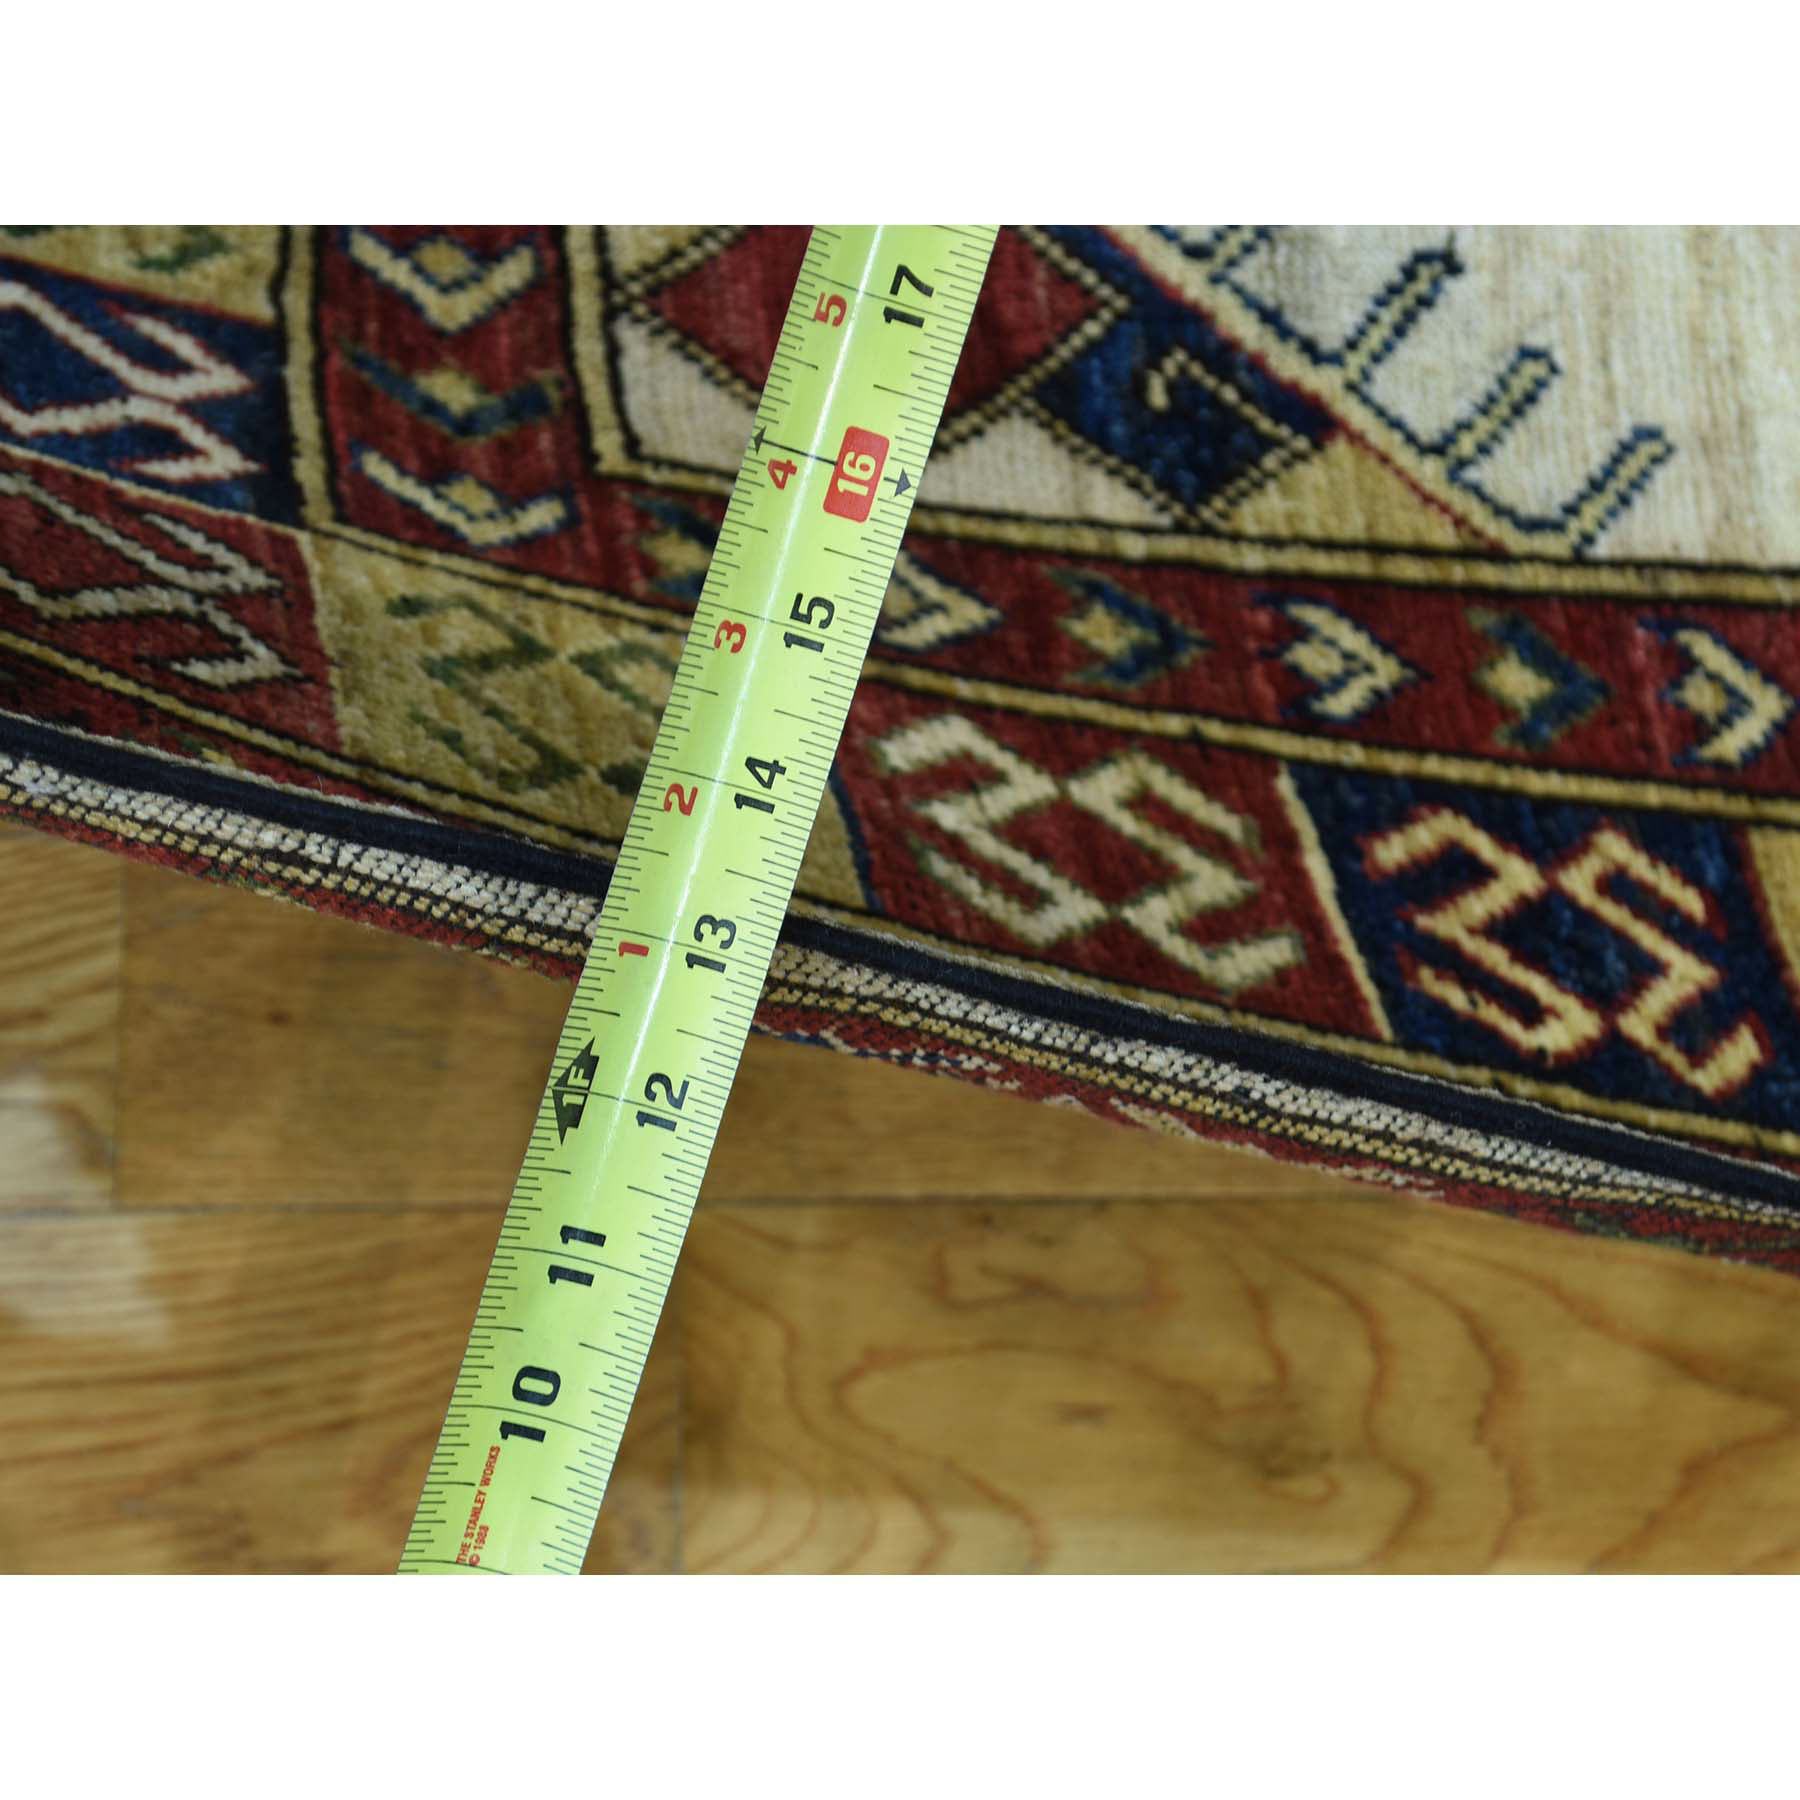 6-x10- On Clearance 100 Percent Wool Hand-Knotted Turkoman Ersari Oriental Rug 